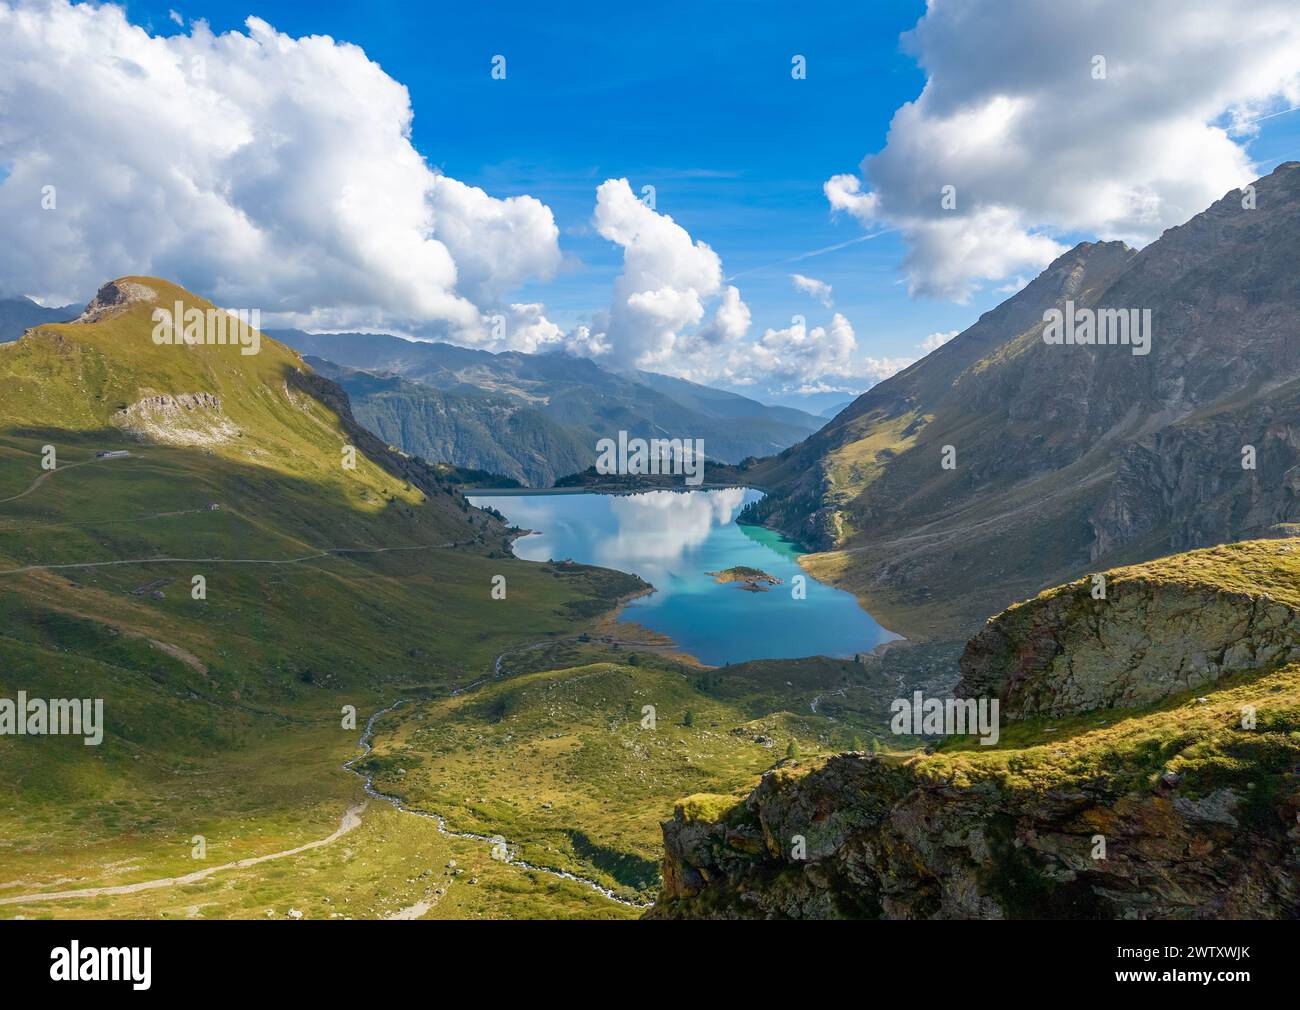 Breuil-Cervinia (Italia) - Una veduta del Cervino, catena montuosa delle Alpi in Valle d'Aosta, qui con sentieri di trekking, laghi ed alpinistica Ferrata Vofrède Foto Stock